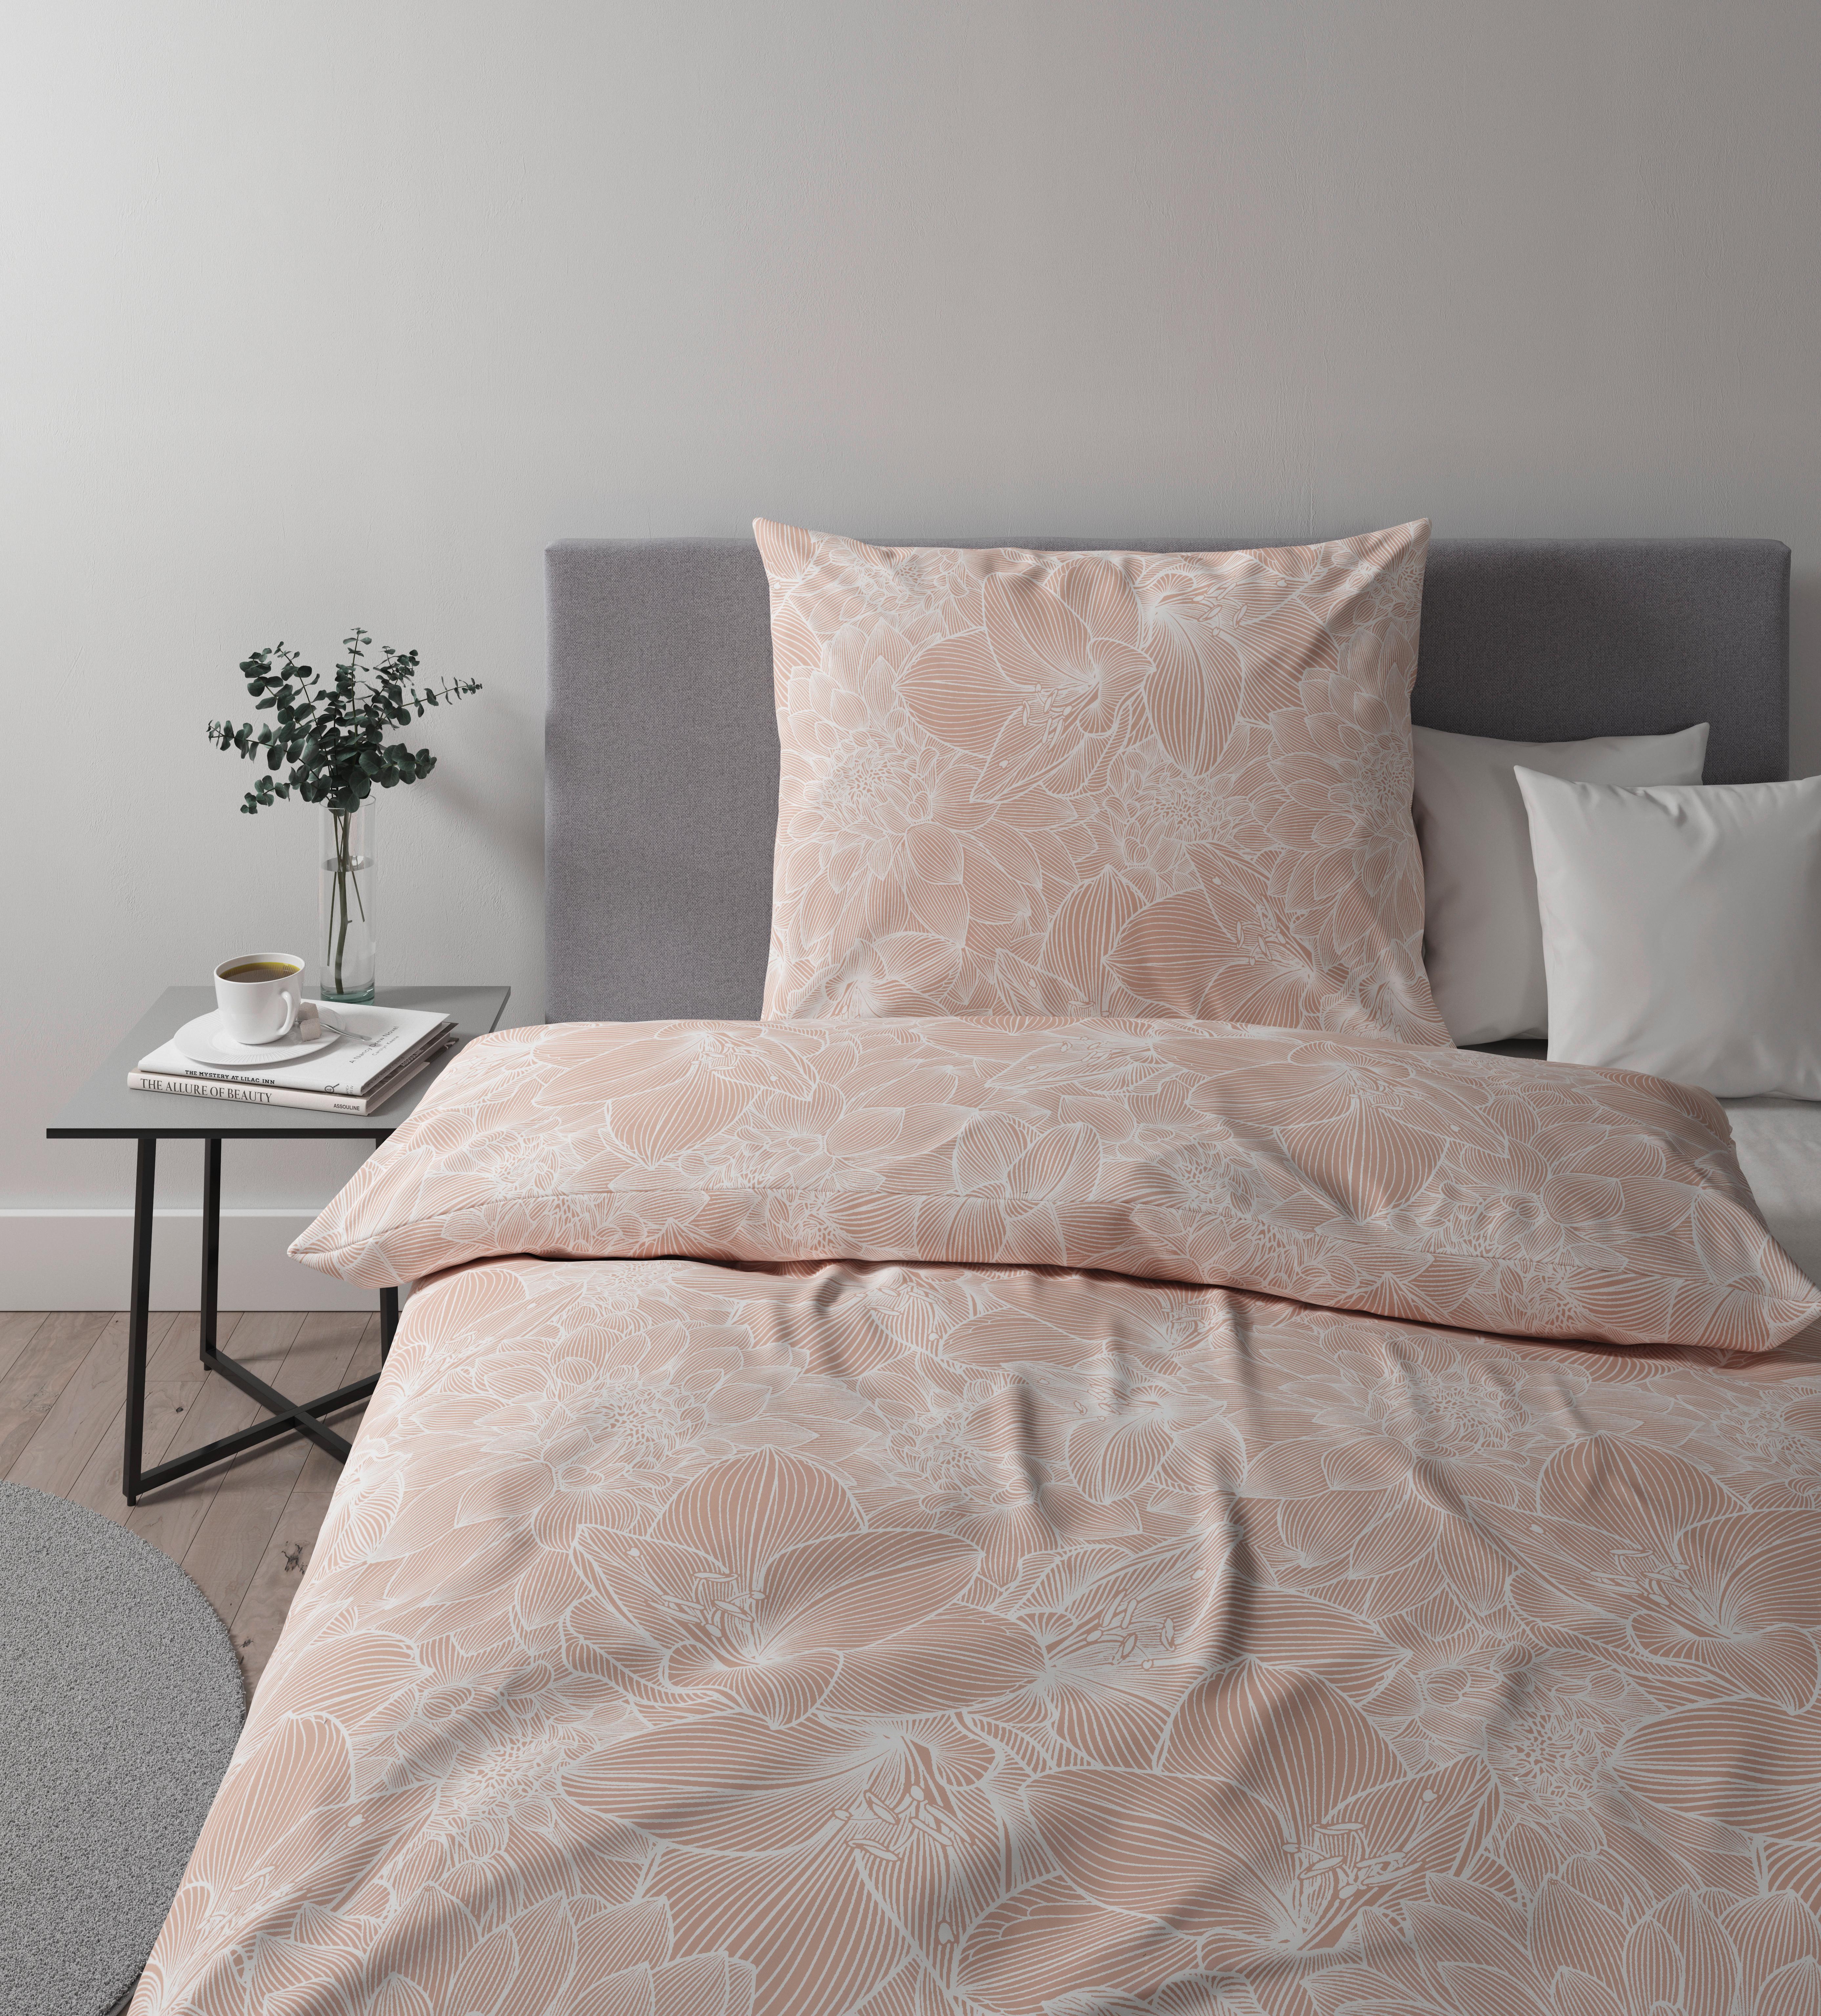 Lenjerie de pat Larissa - roz, Konventionell, textil (140/200cm) - Premium Living